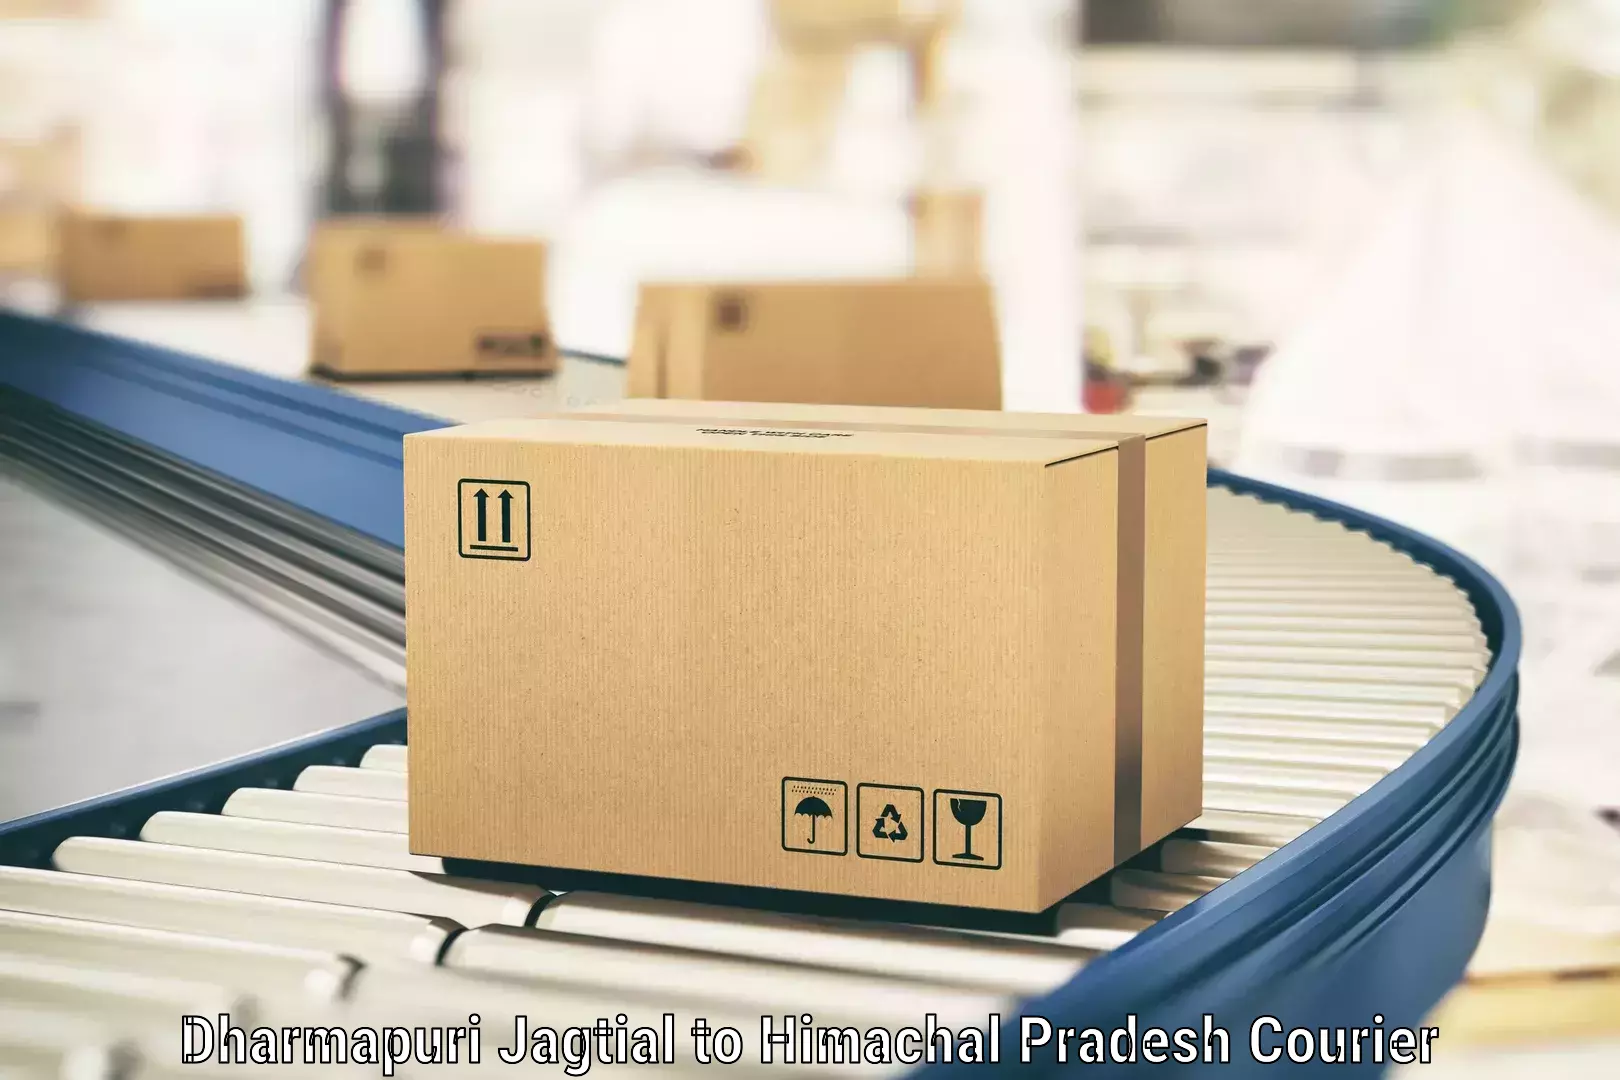 Efficient parcel transport in Dharmapuri Jagtial to Nadaun